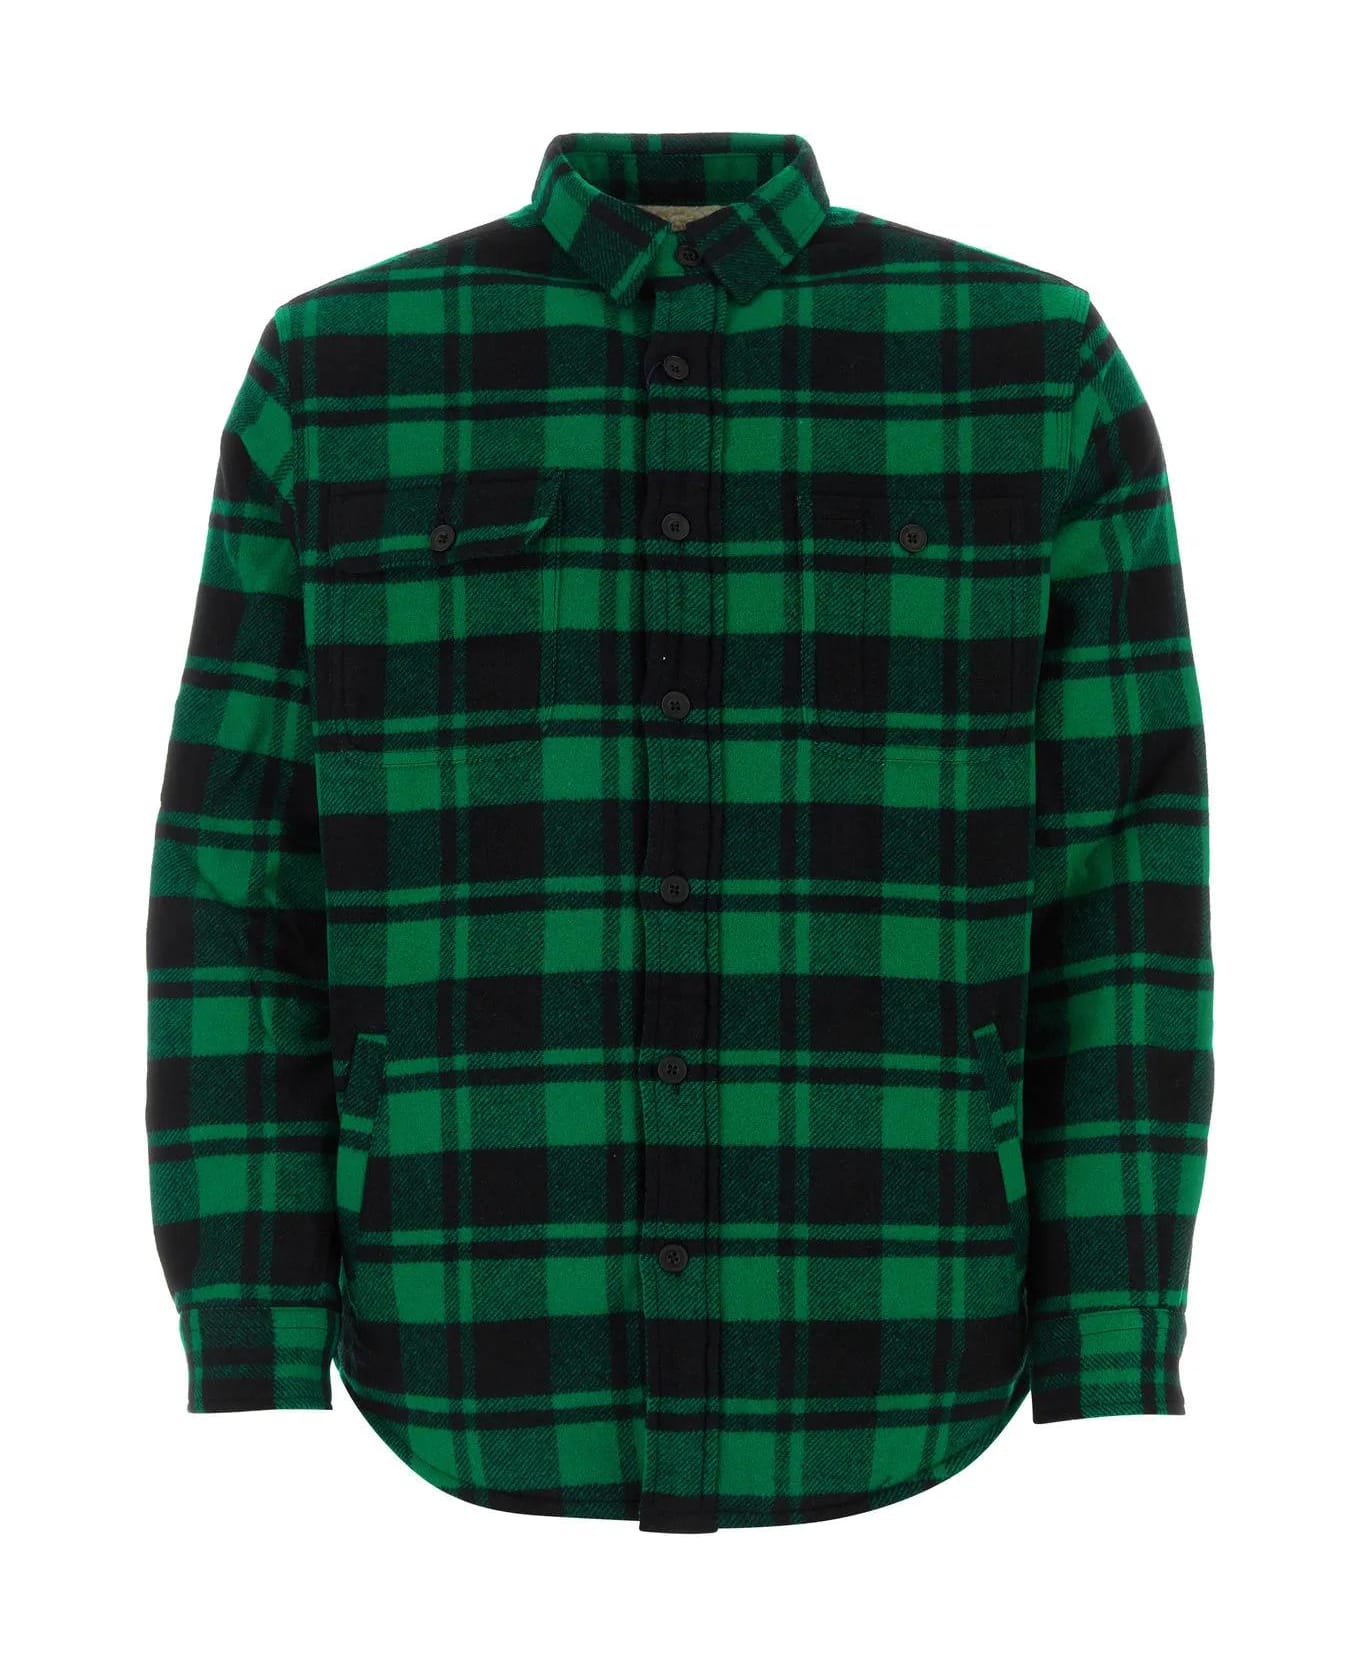 Ralph Lauren Printed Wool Blend Shirt - GREEN/BLACK